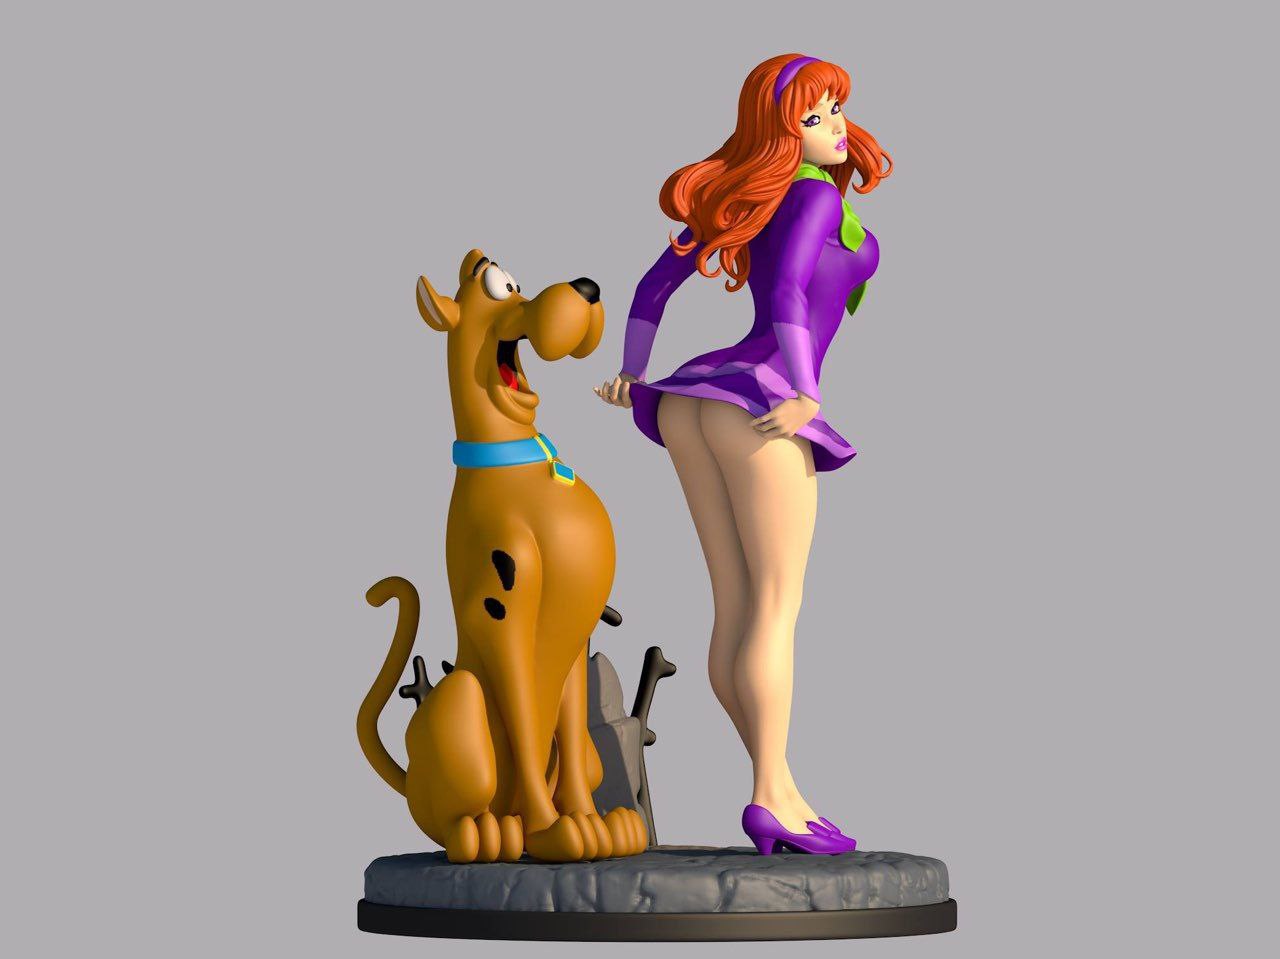 Daphne & Scooby - Arquivos 3D.